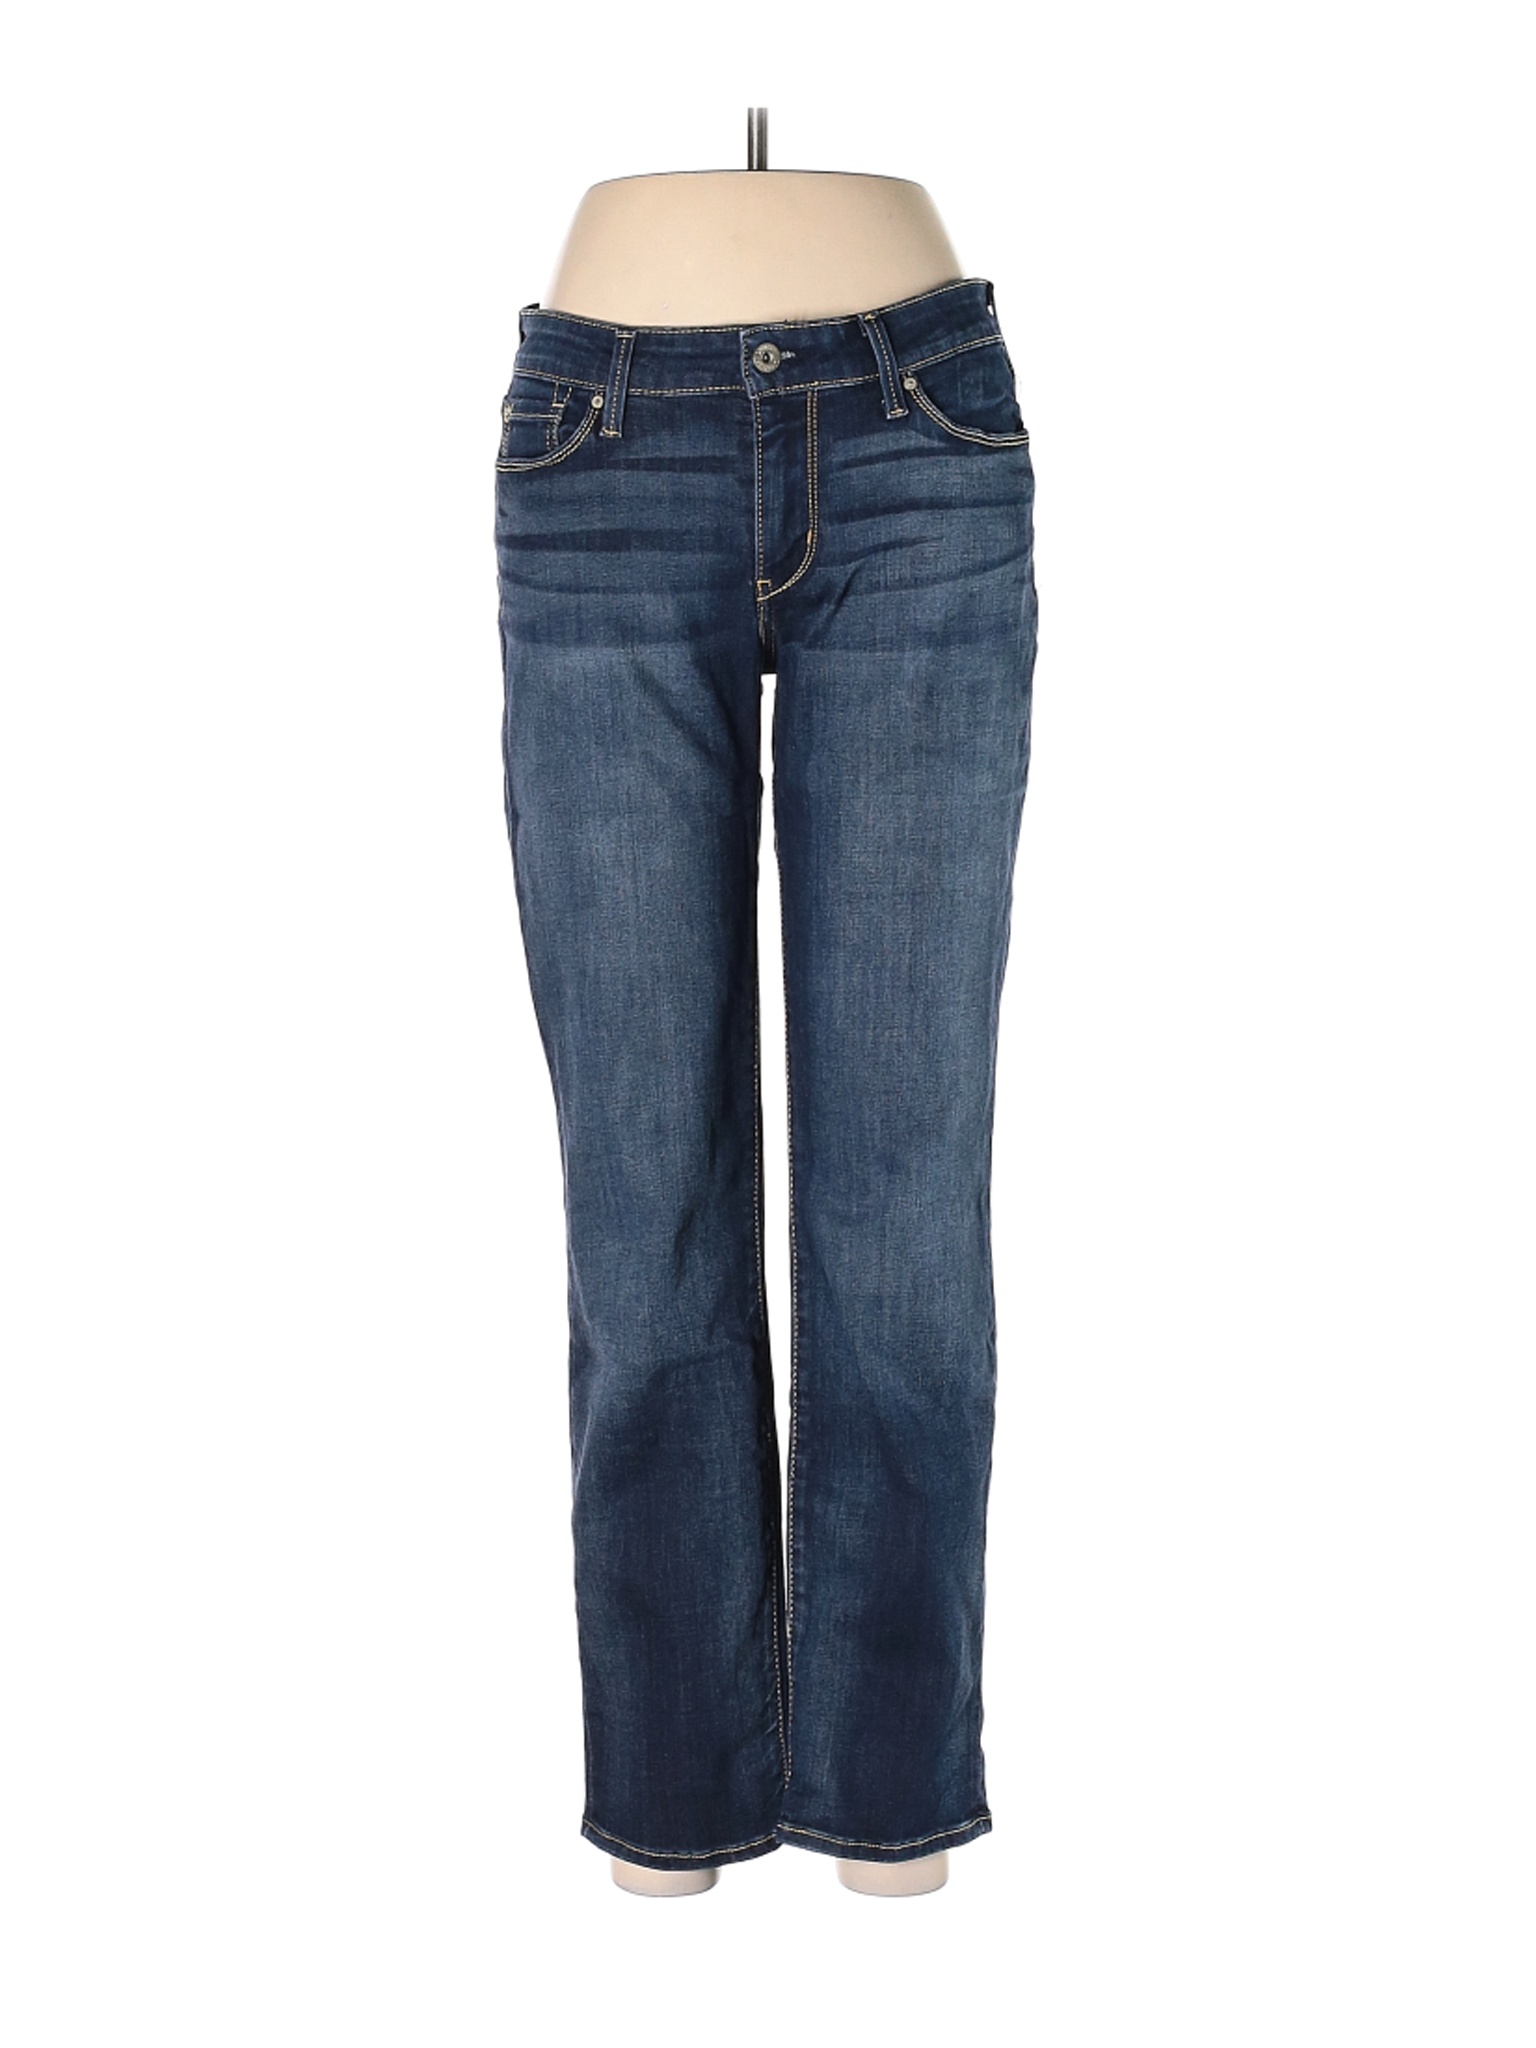 Denizen from Levi's Women Blue Jeans 29W | eBay